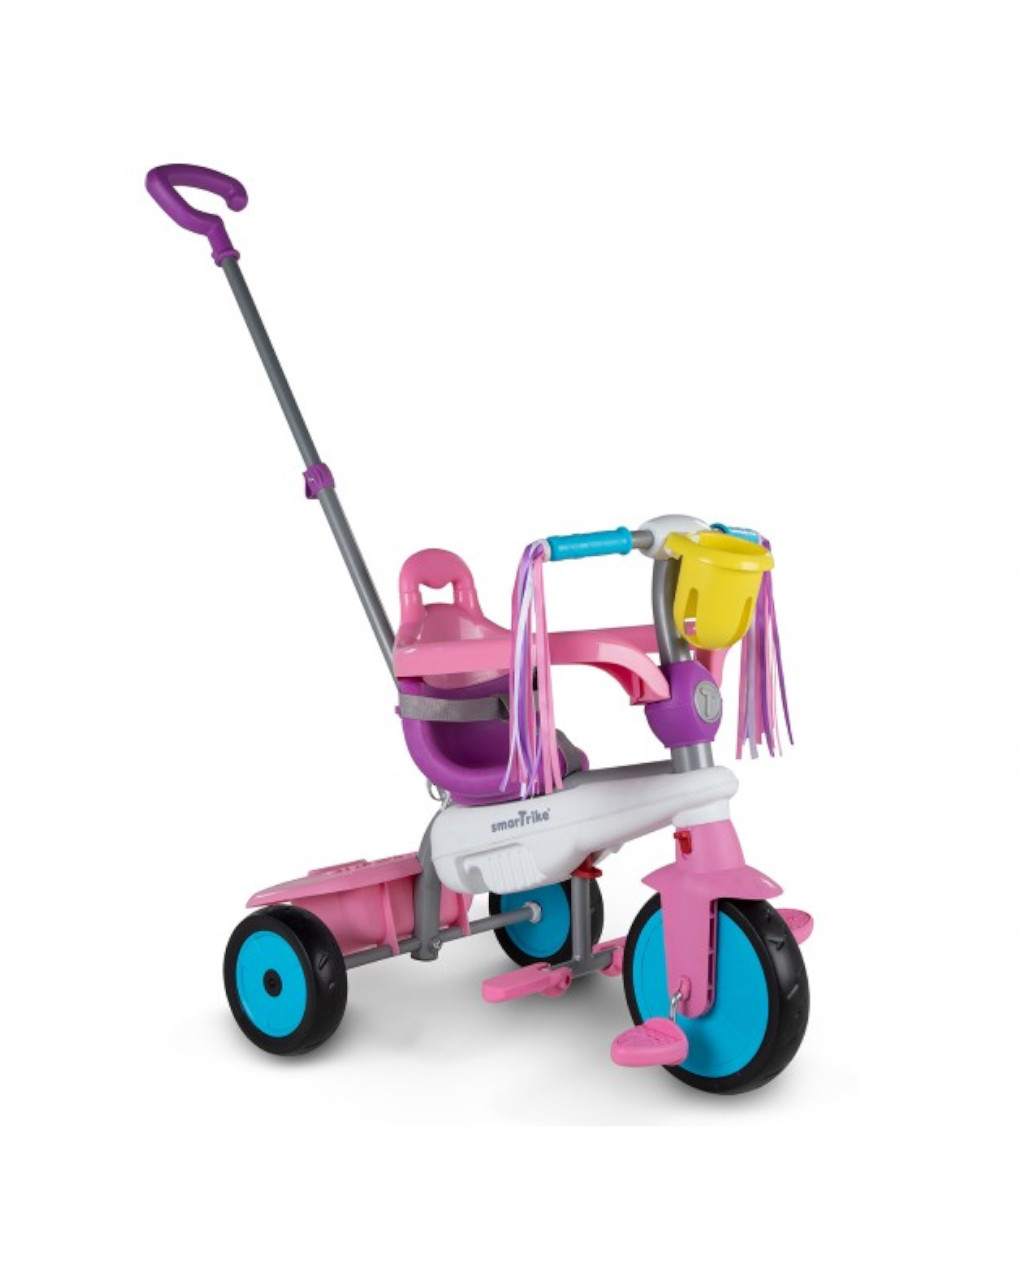 Triciclo smart trike breeze 3 em 1 rosa - Baby Smile Original